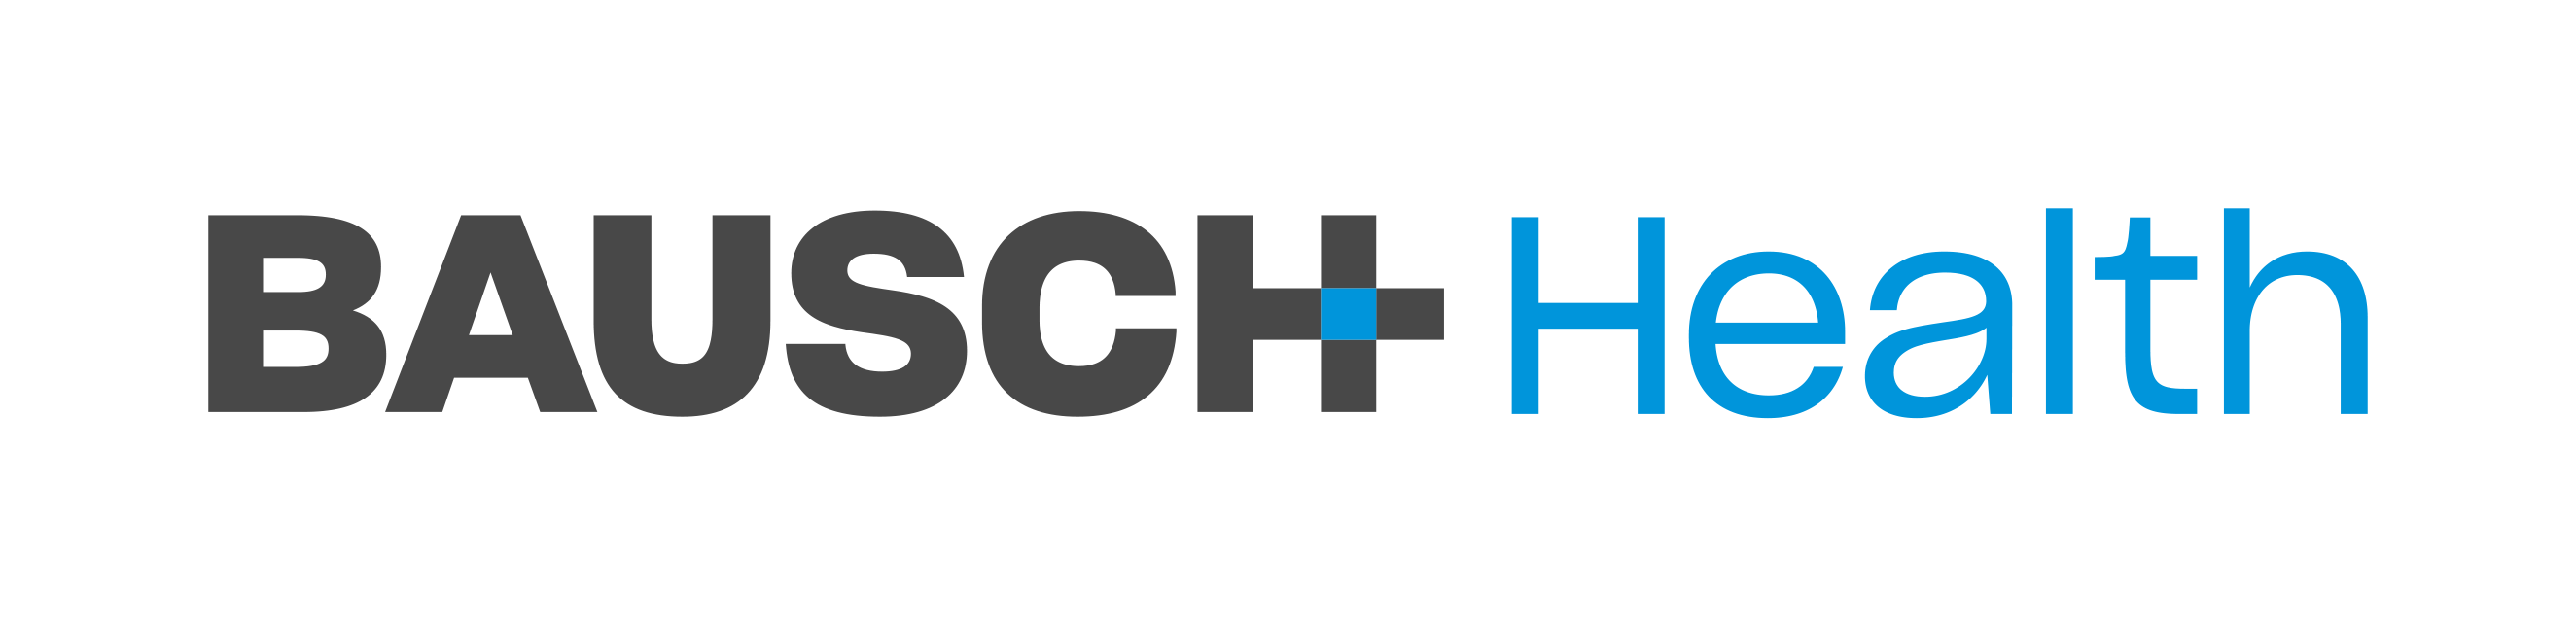 Bausch-Health---logo.png